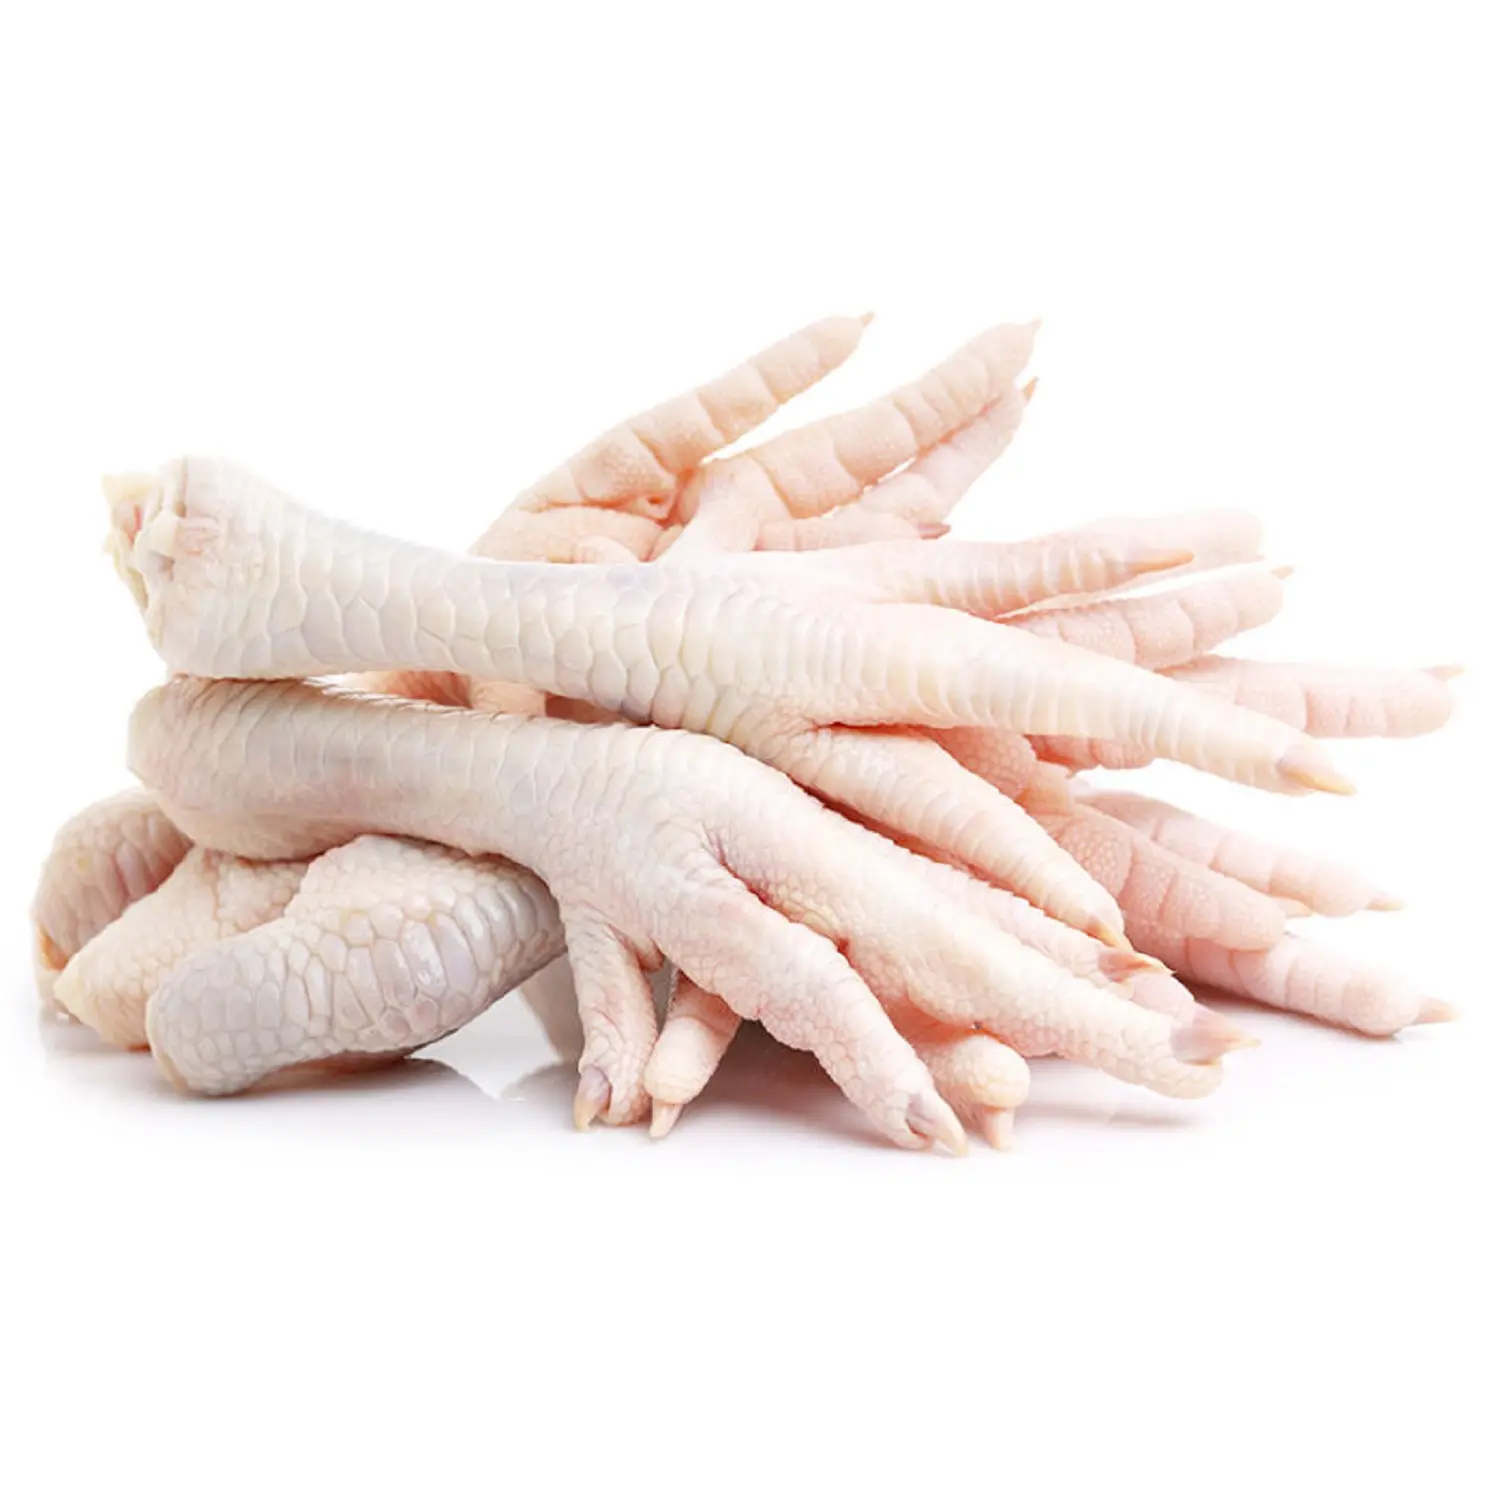 Productos cárnicos y avícolas de alta calidad, certificación Halal ISO Gap, patas de pollo congeladas de Rumanía